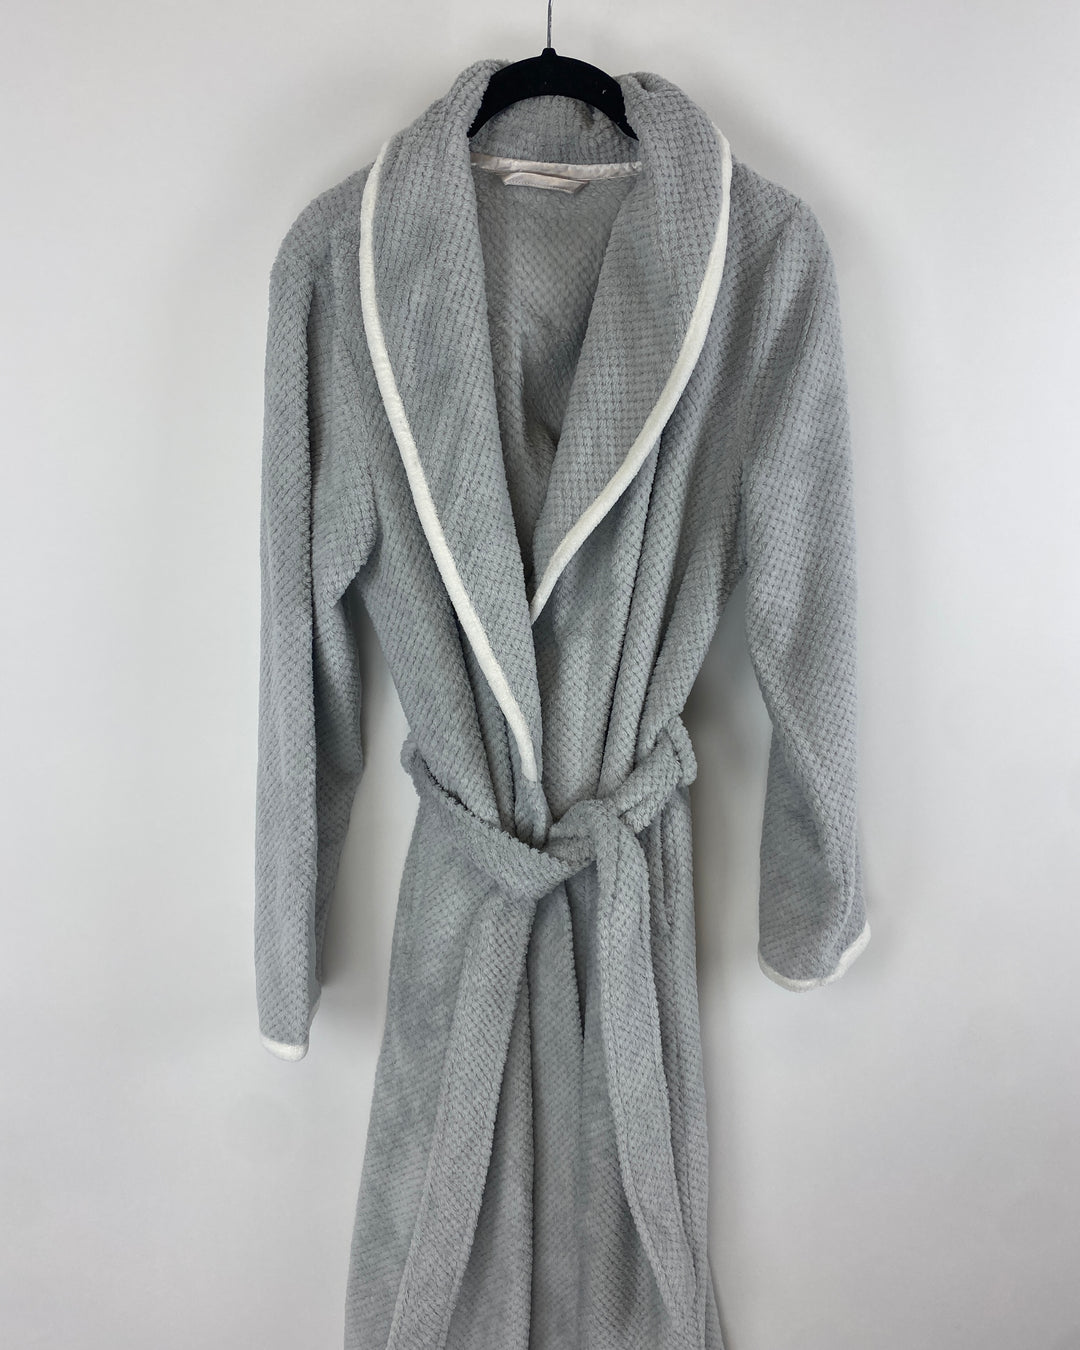 Fuzzy Grey Robe with White Trim - Small, 1X